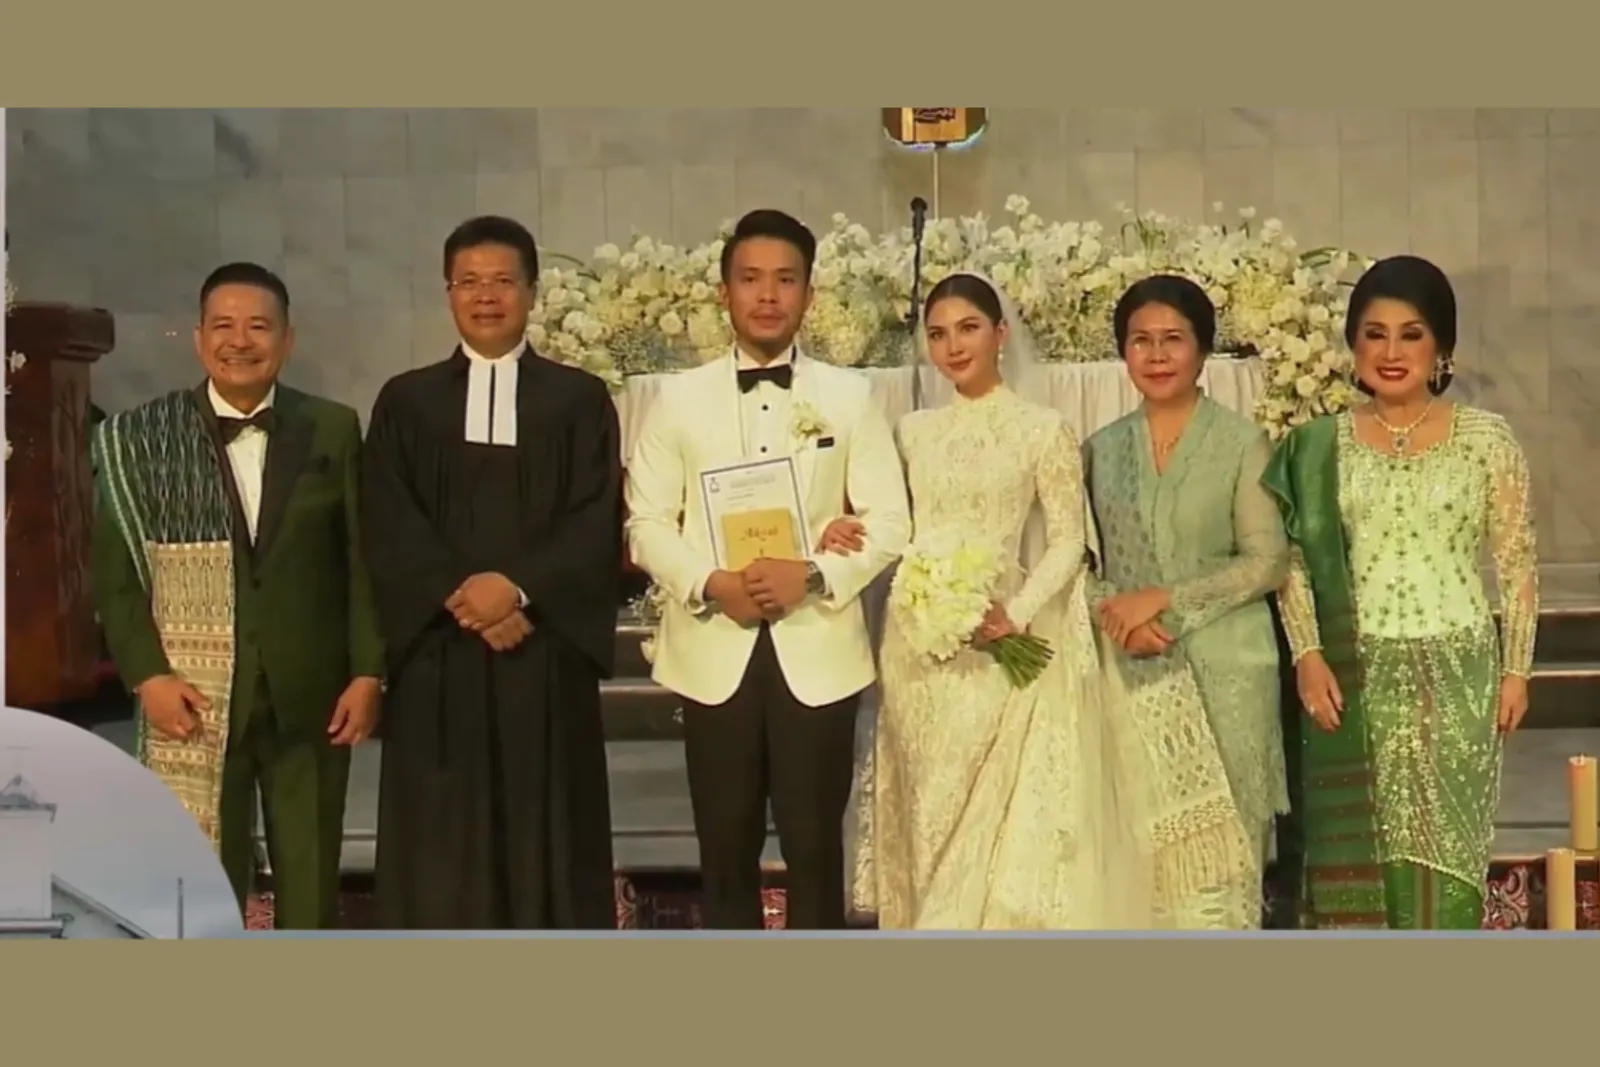 9 Momen Pemberkatan Pernikahan Jessica Mila dan Yakup Hasibuan